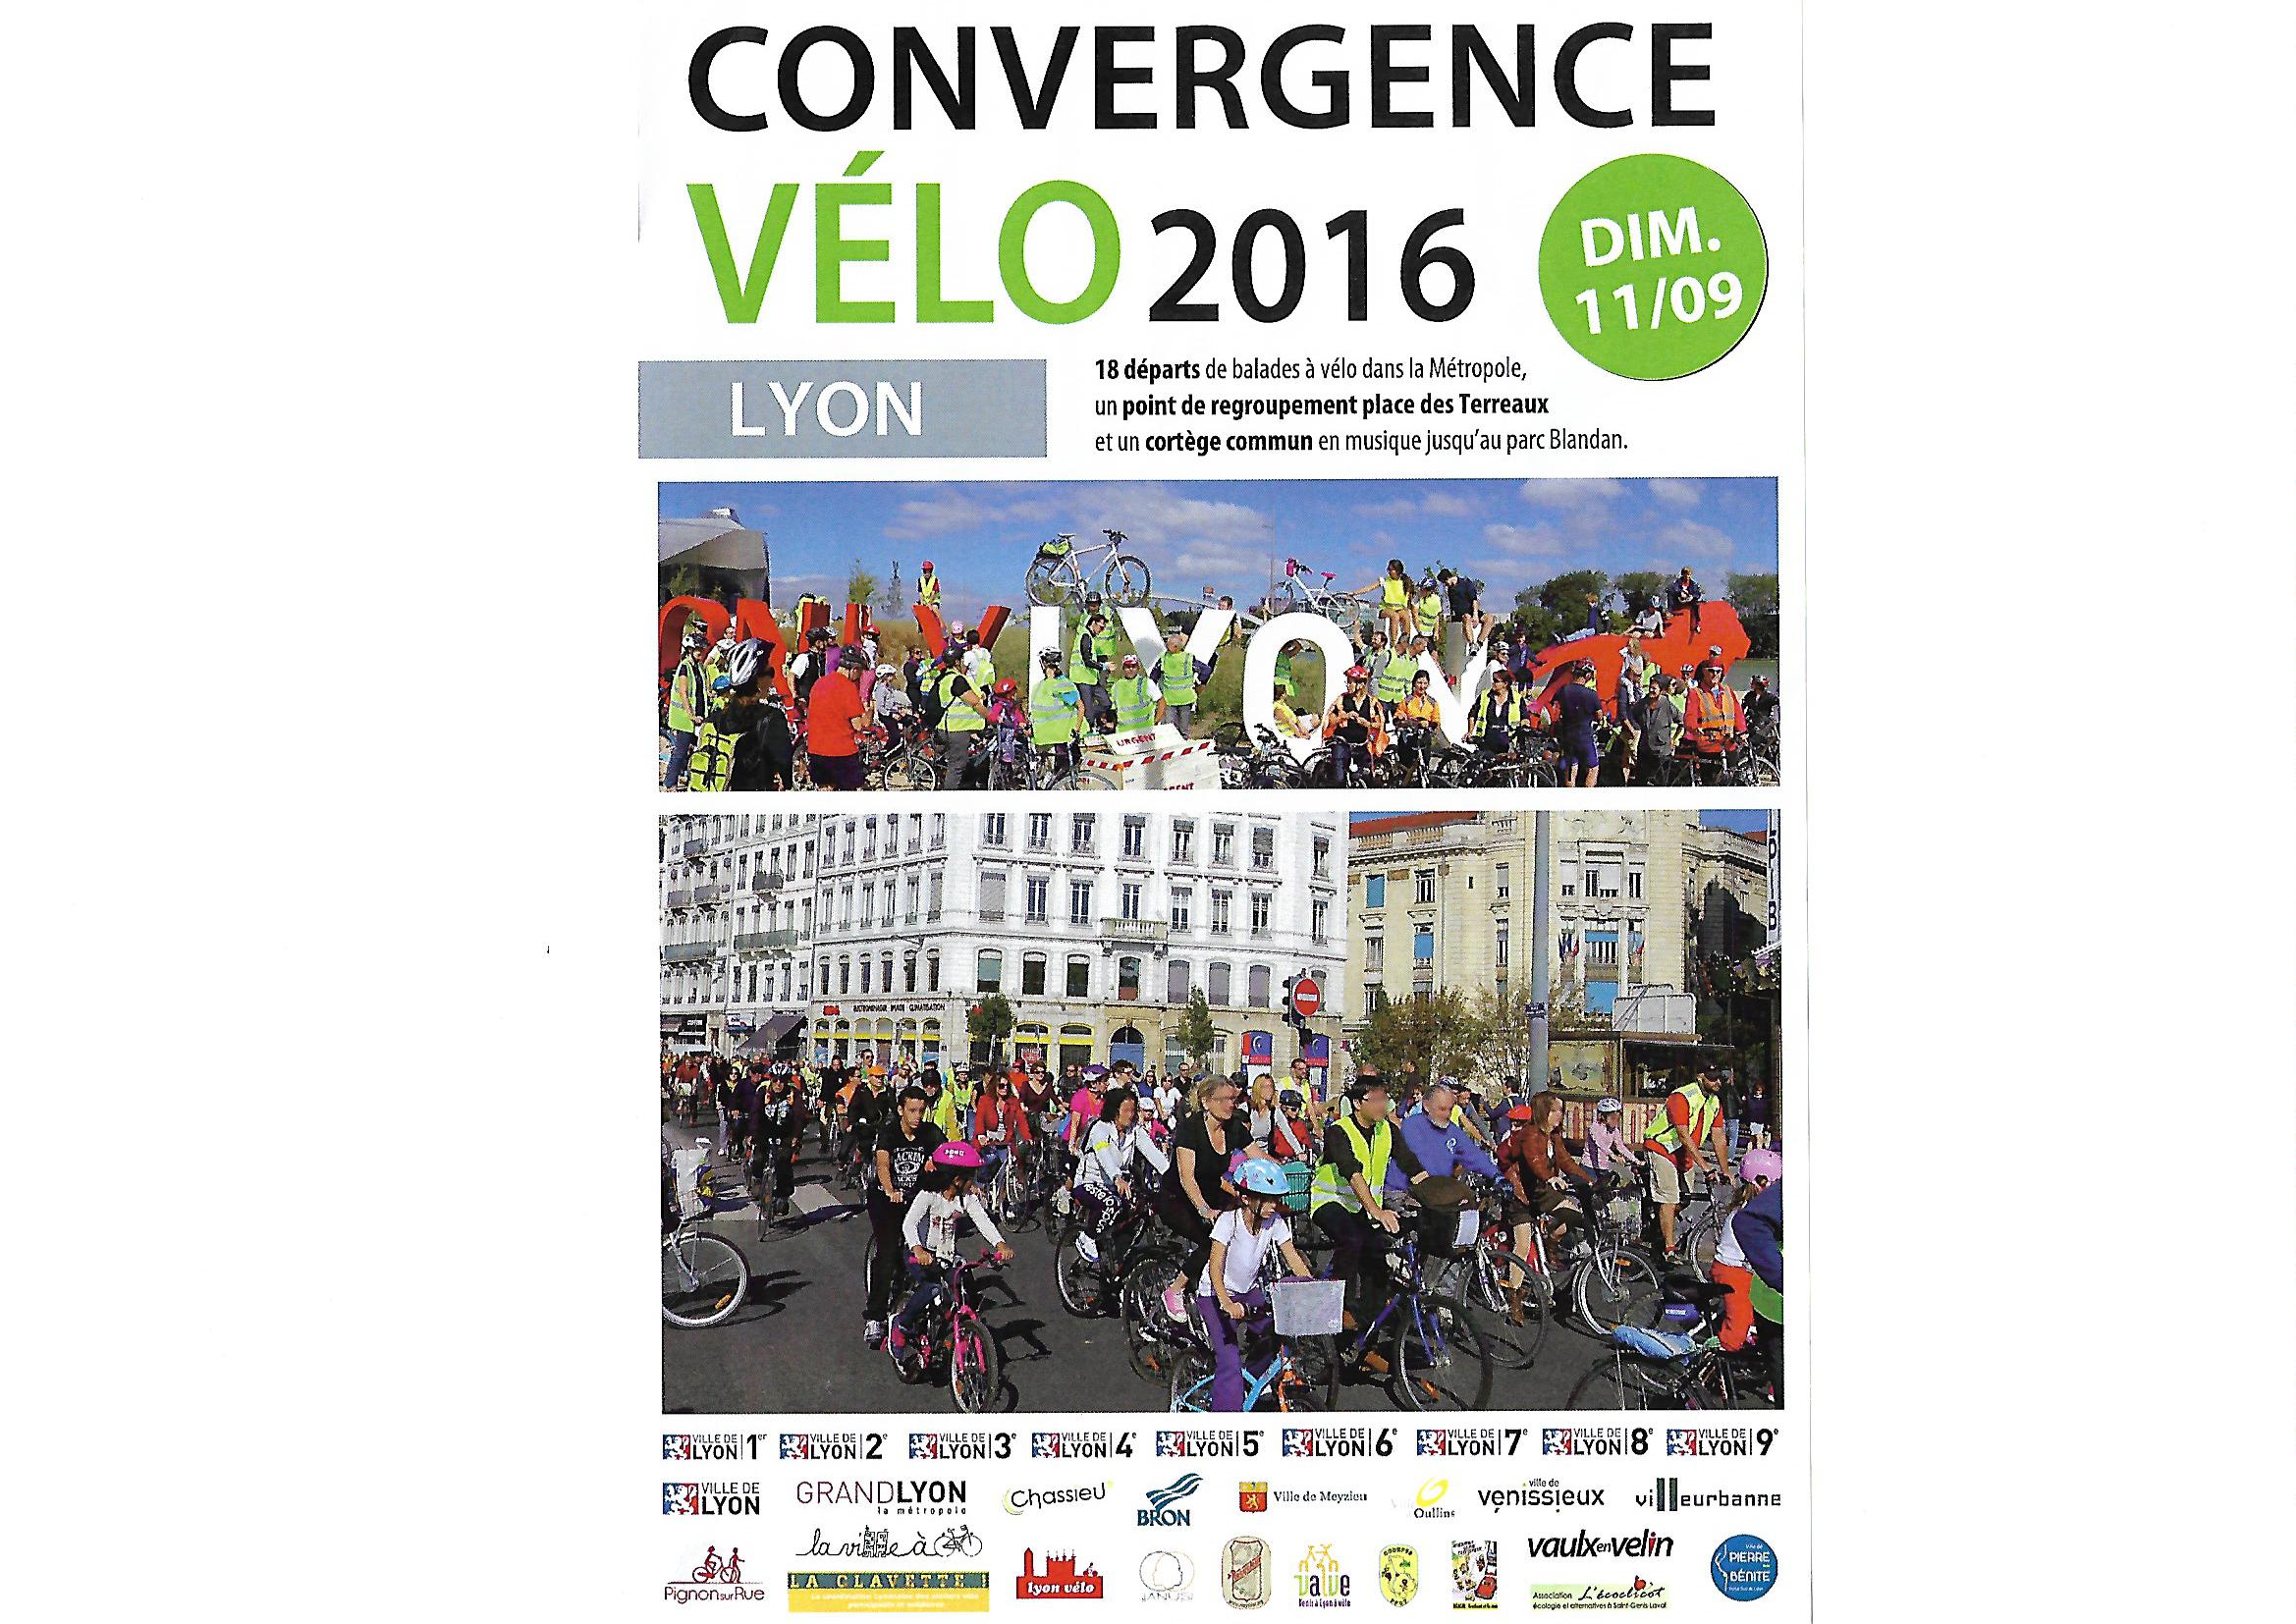 LYON | Convergence Vélo 2016 c’est pour le dimanche 11 septembre